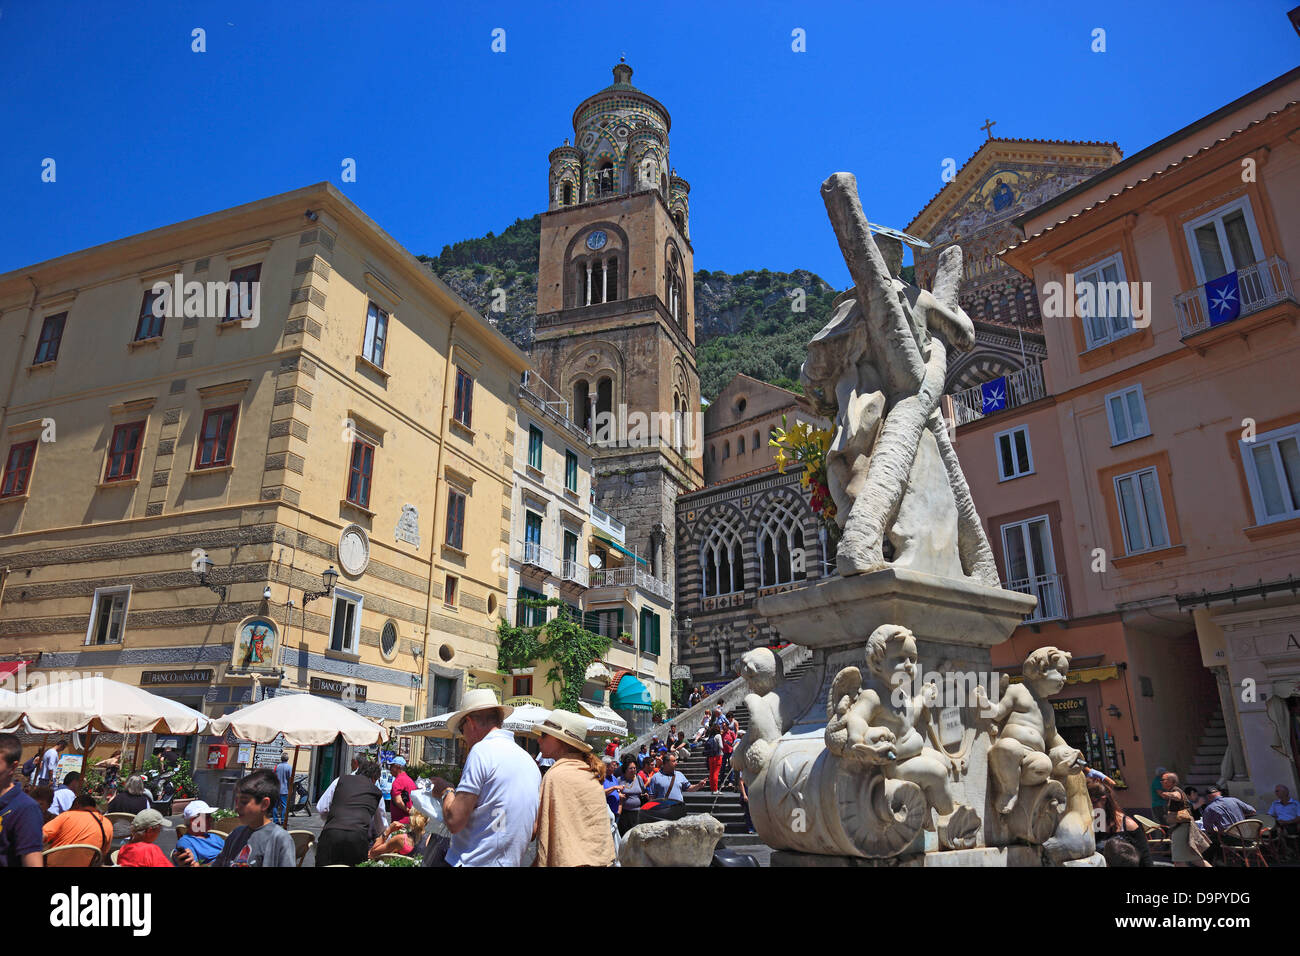 La Plaza de la catedral y la Catedral de la Cattedrale di Sant 'Andrea, Amalfi, Campania, Italia Foto de stock